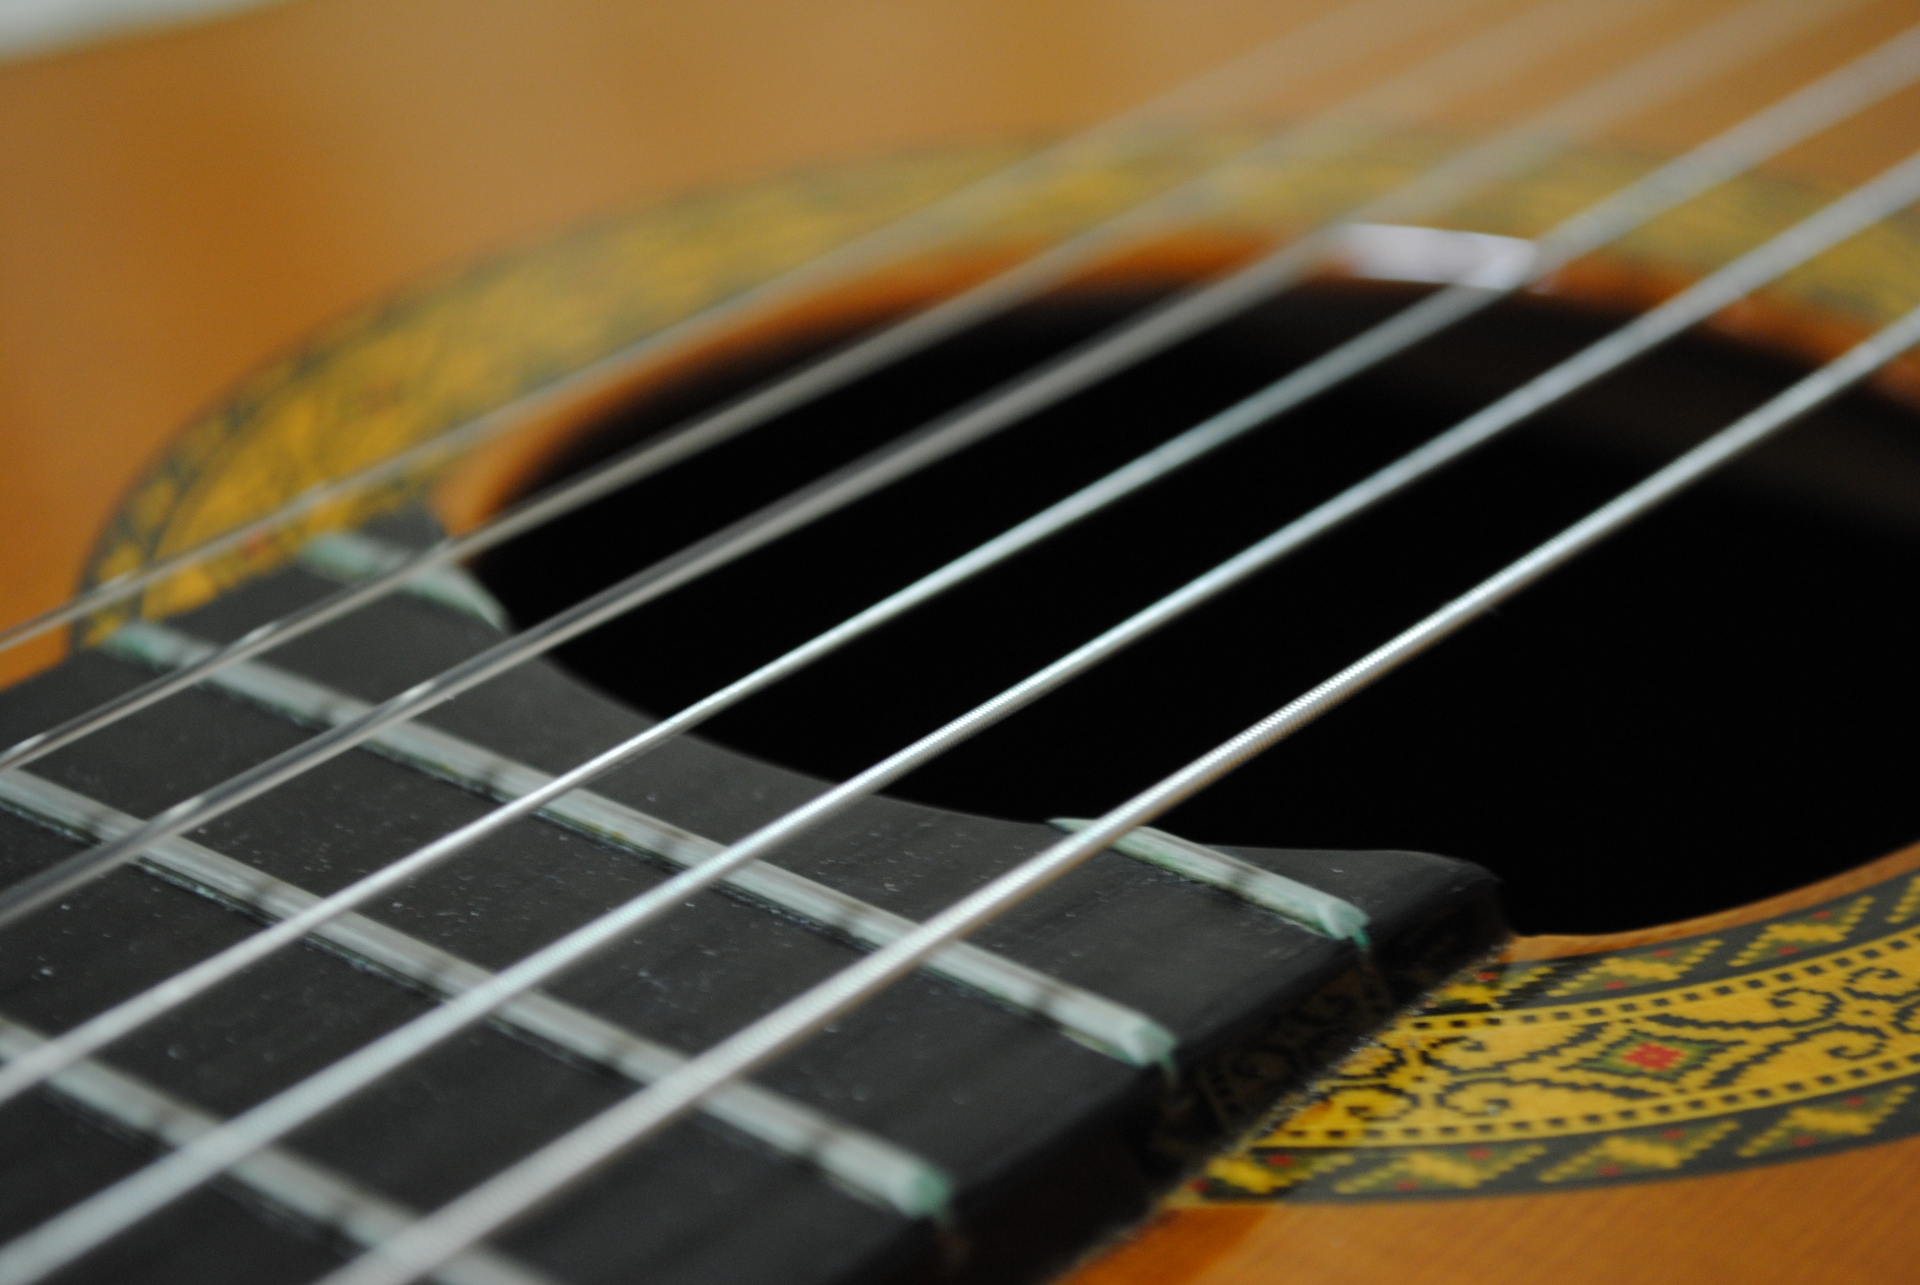 クラシックギターの弦のおすすめ9選|選び方も解説 | ビギナーズ